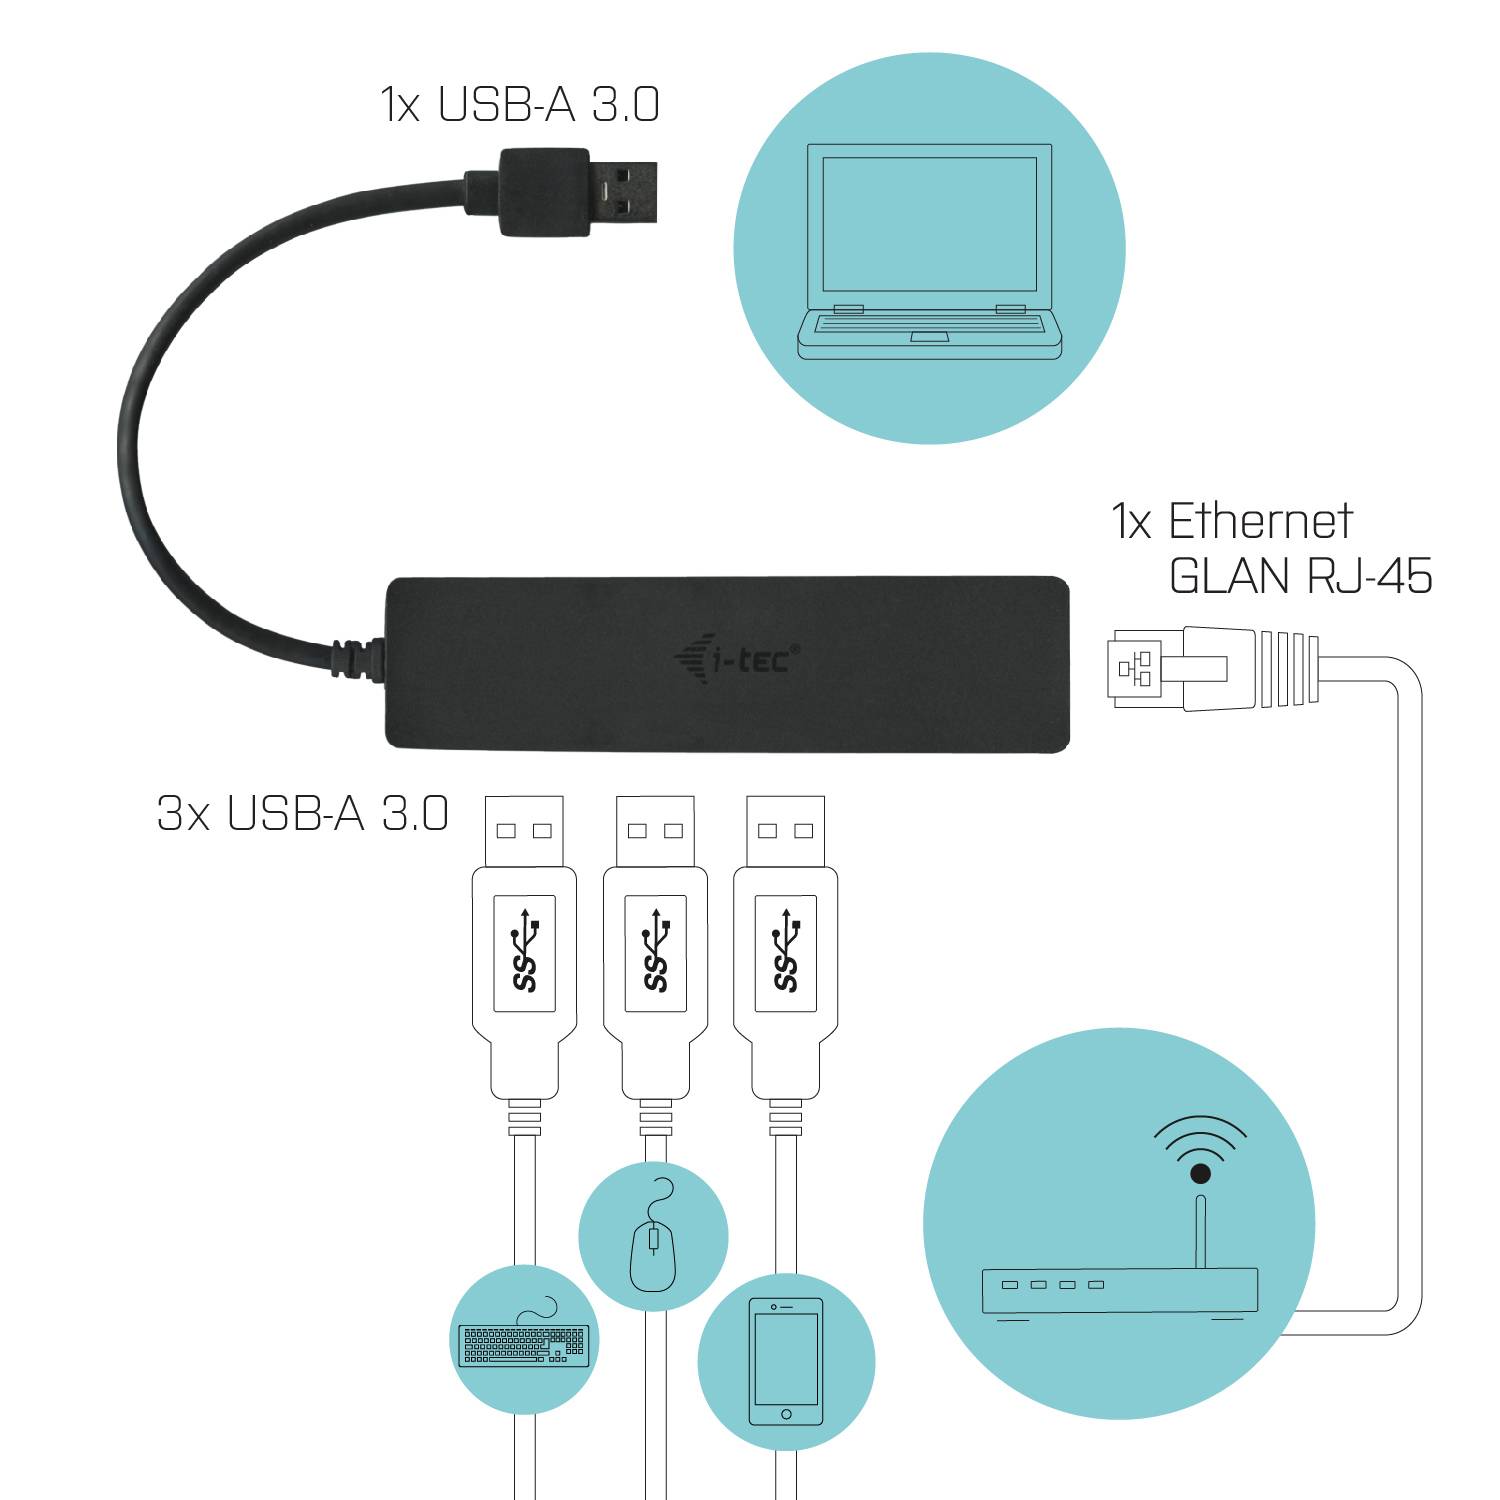 Rca Informatique - image du produit : I-TEC SLIM HUB 3 PORT USB 3.0 GB ETHERNET ADAPTER WIN/MAC